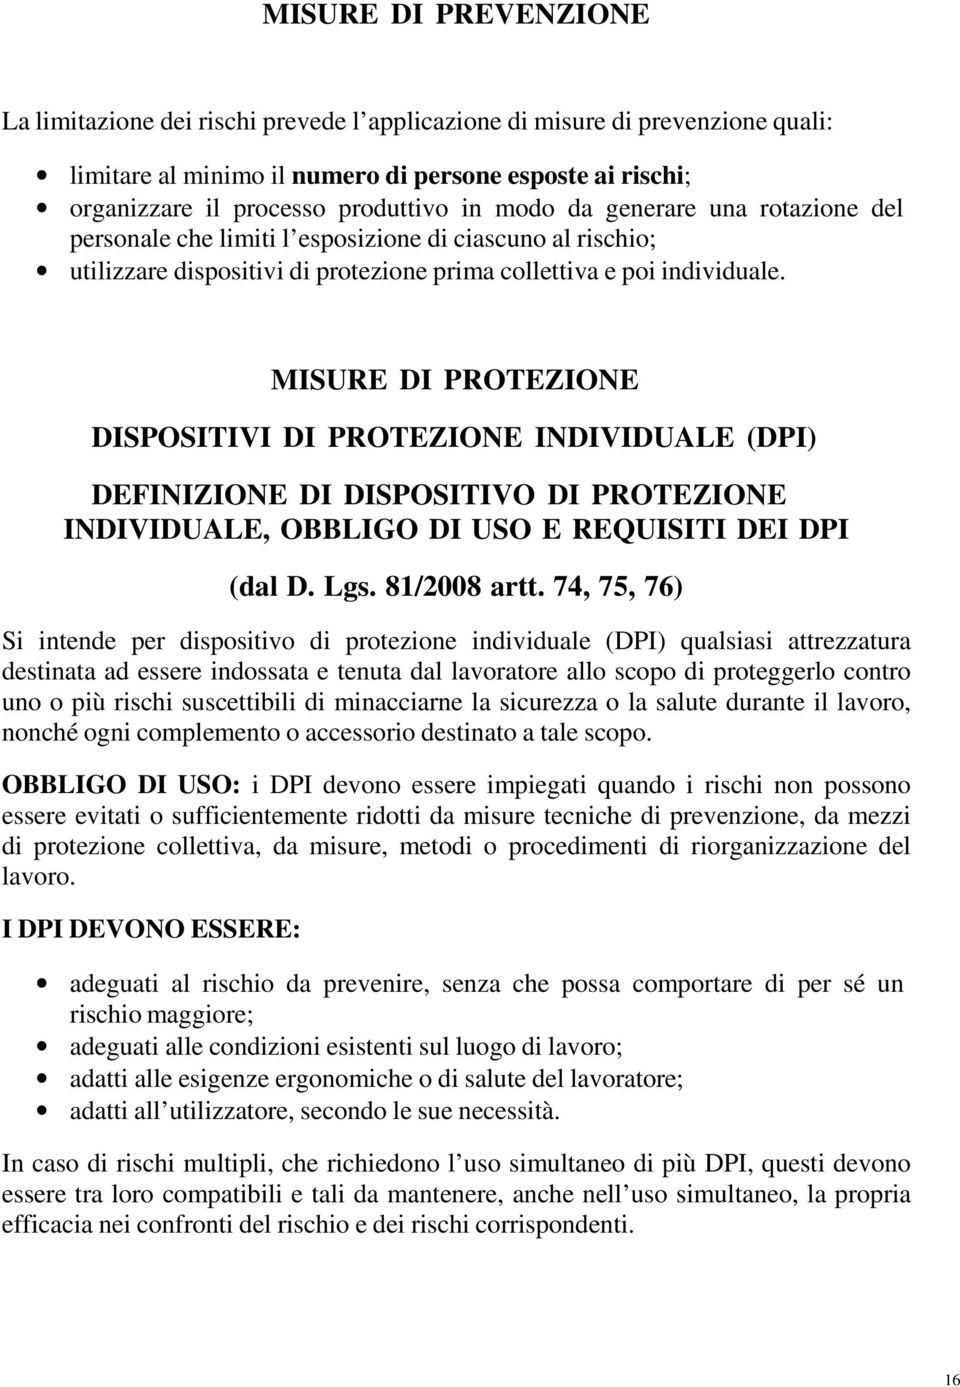 MISURE DI PROTEZIONE DISPOSITIVI DI PROTEZIONE INDIVIDUALE (DPI) DEFINIZIONE DI DISPOSITIVO DI PROTEZIONE INDIVIDUALE, OBBLIGO DI USO E REQUISITI DEI DPI (dal D. Lgs. 81/2008 artt.